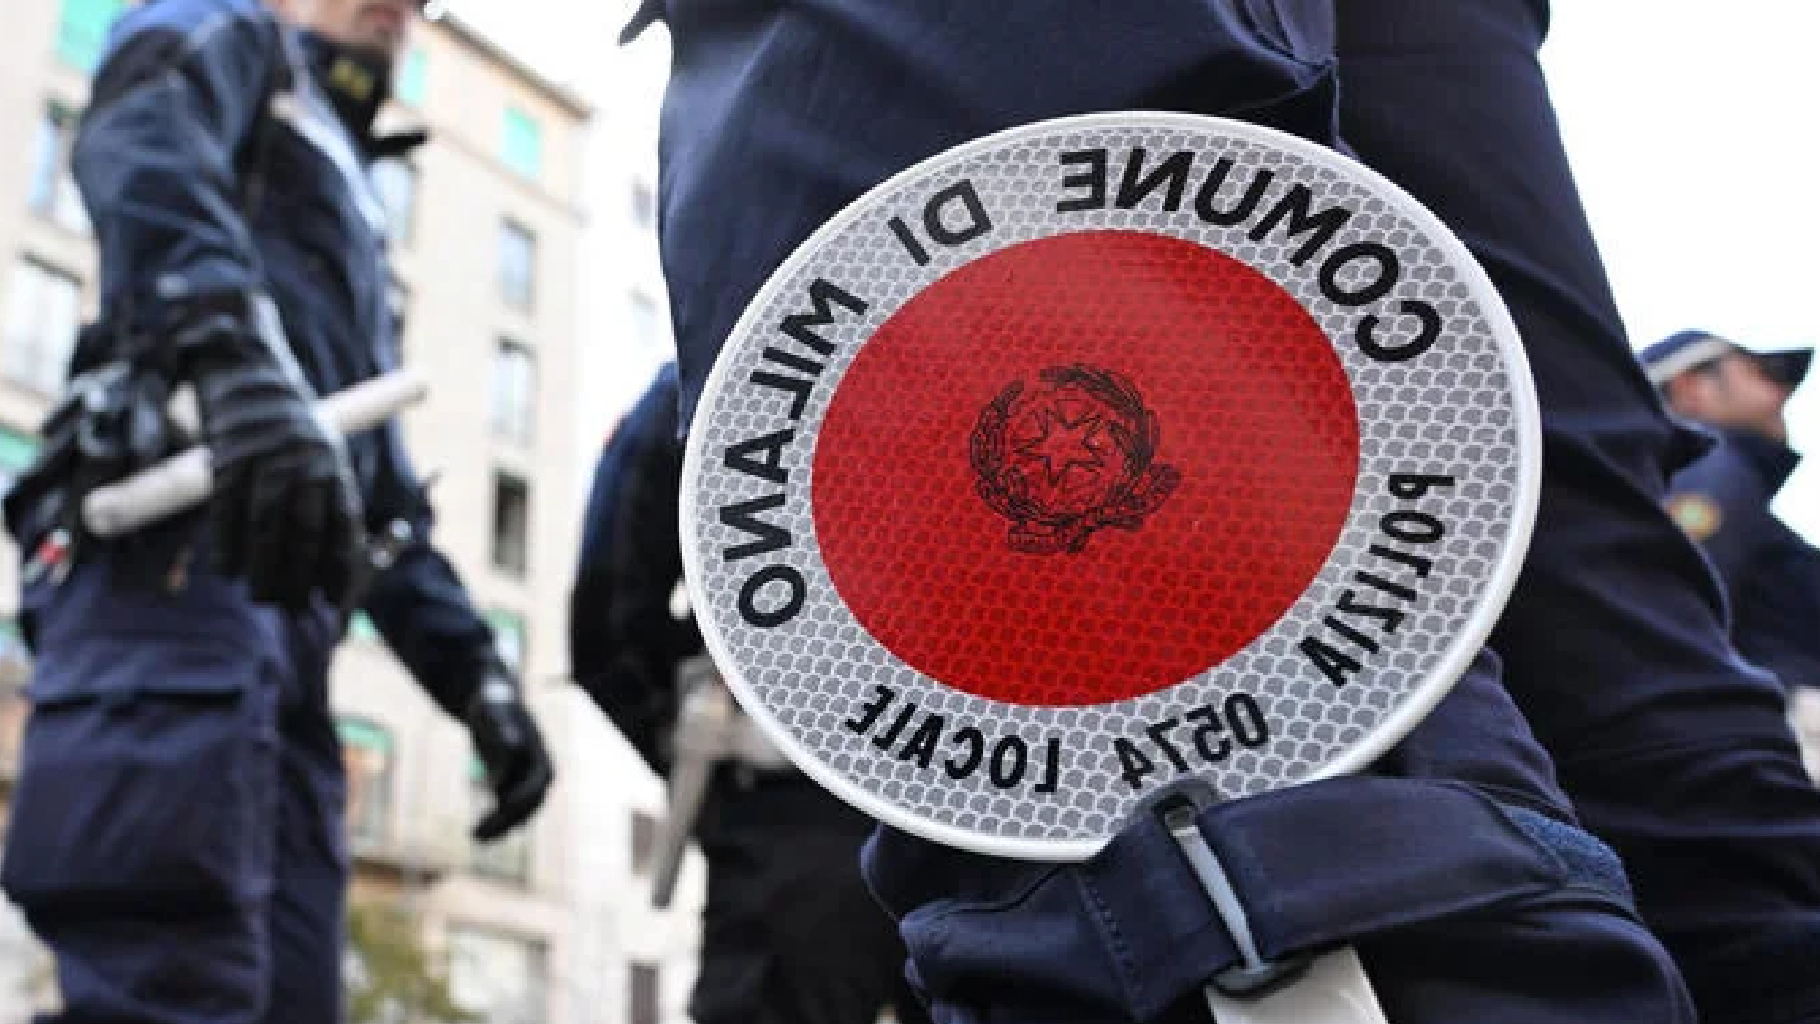 Branco di giovani attacca una pattuglia della Polizia a Milano